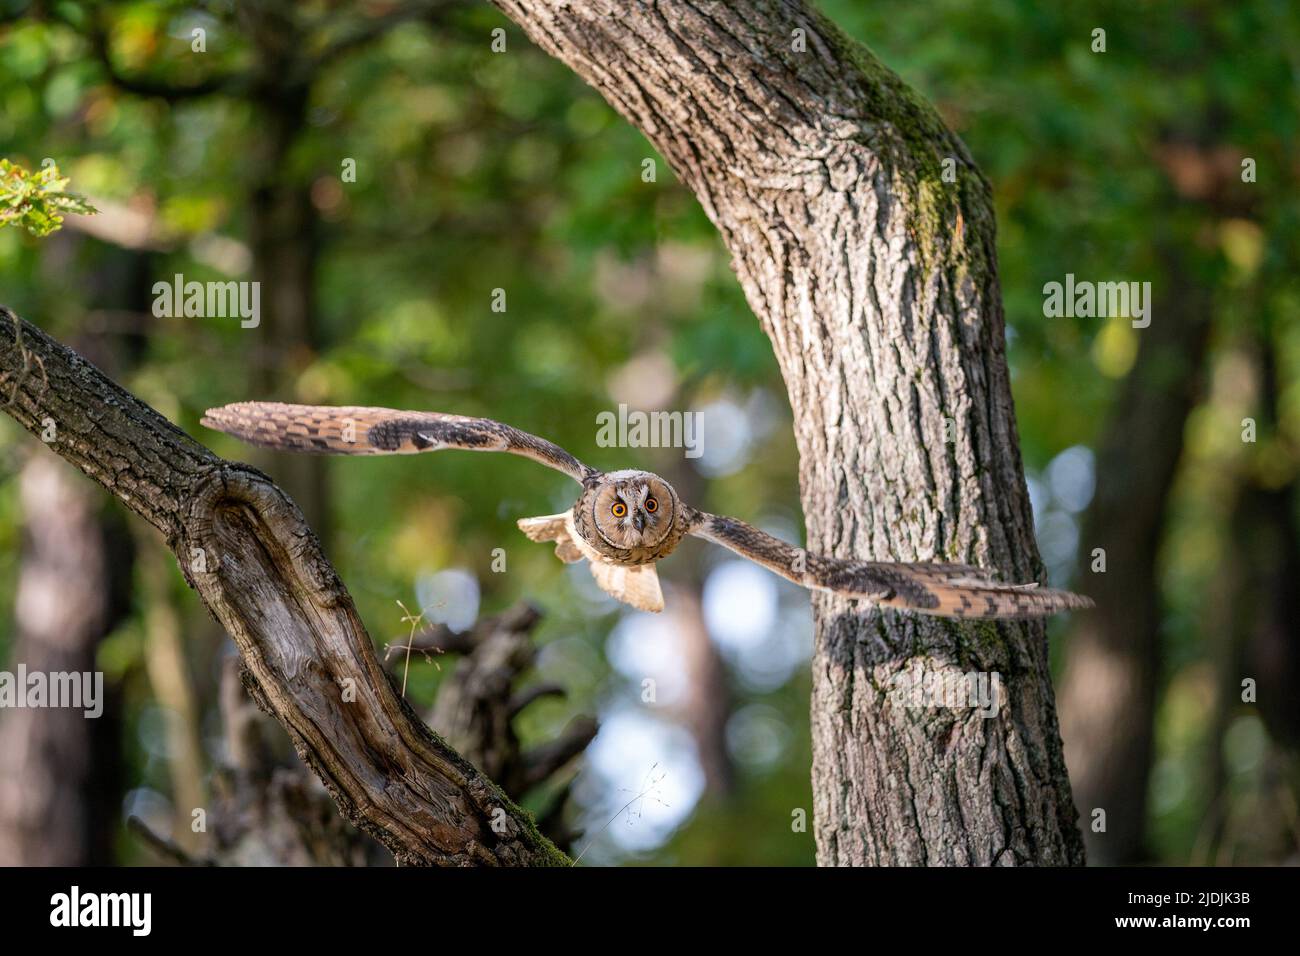 Lechuza dorada volando a través de los árboles. ASIO altus. Foto de acción de un animal en movimiento. Foto de stock